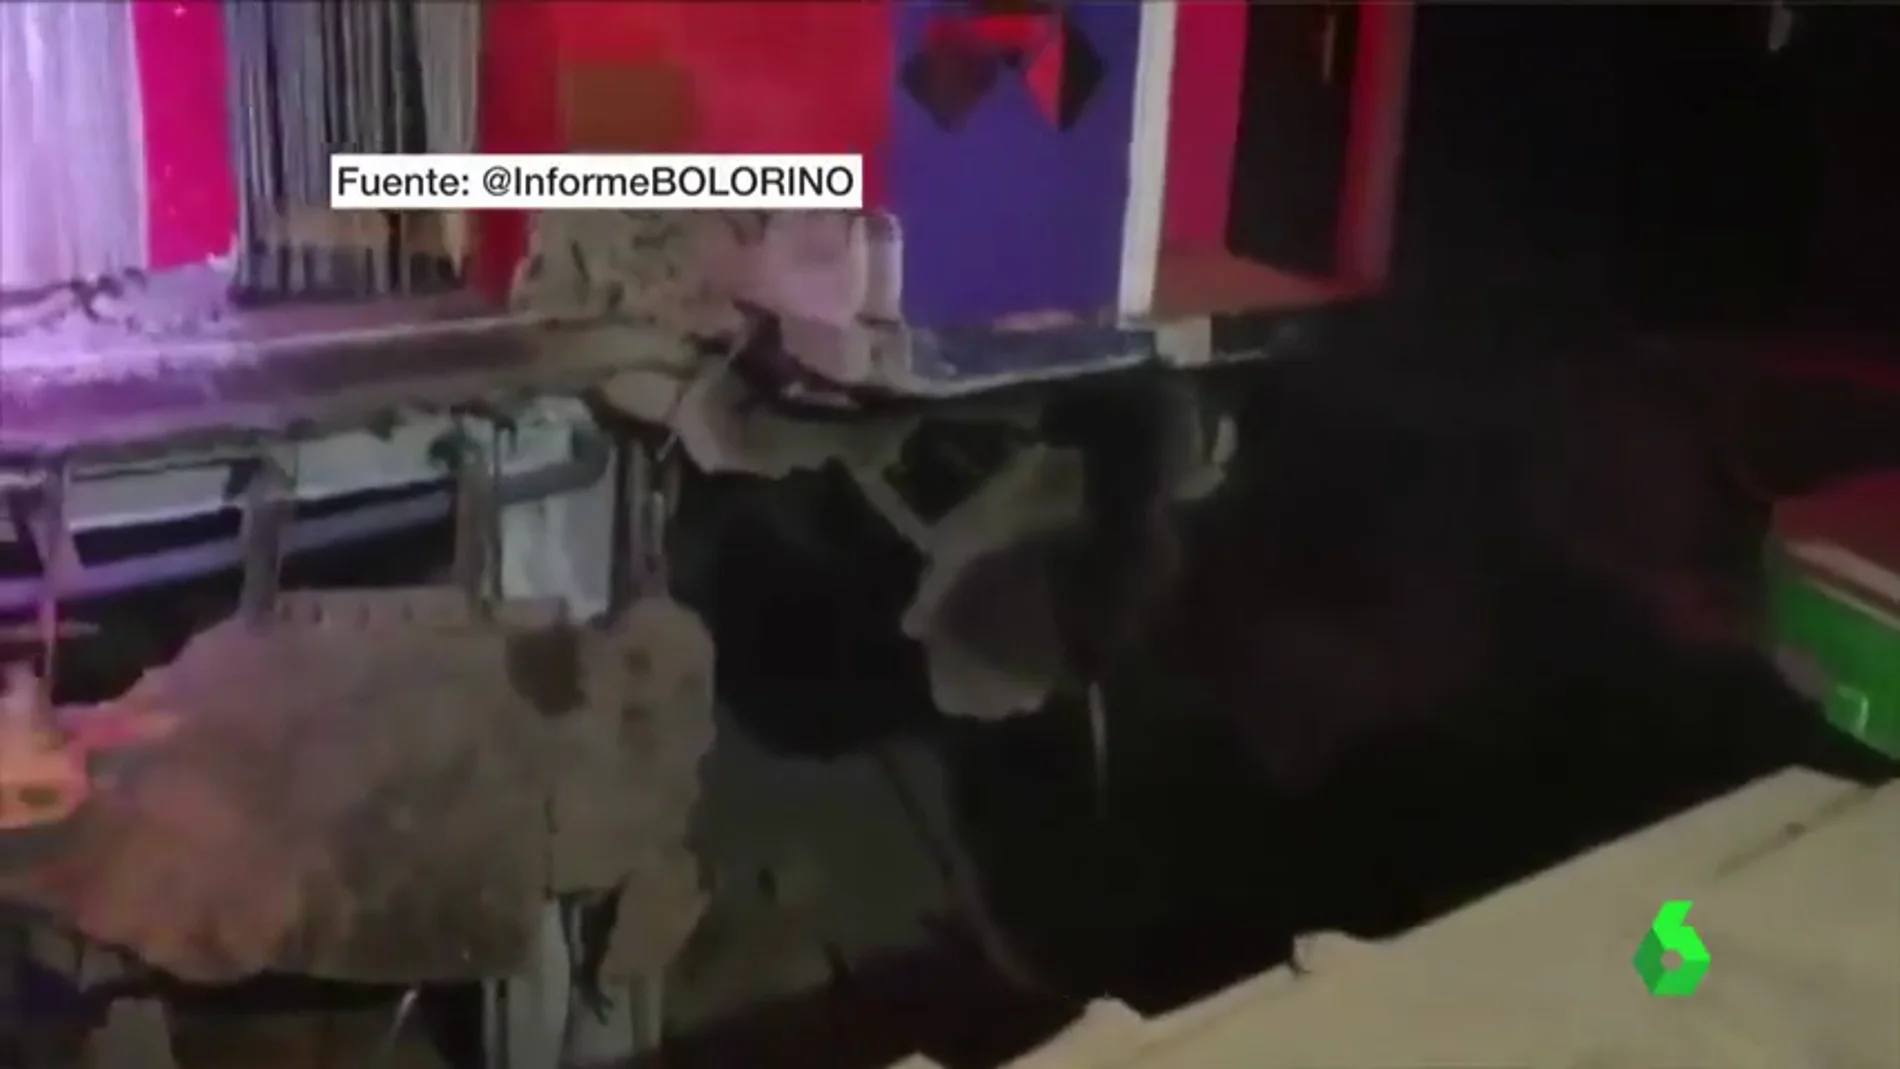 Al menos 22 personas resultan heridas tras hundirse el suelo de una discoteca en Tenerife